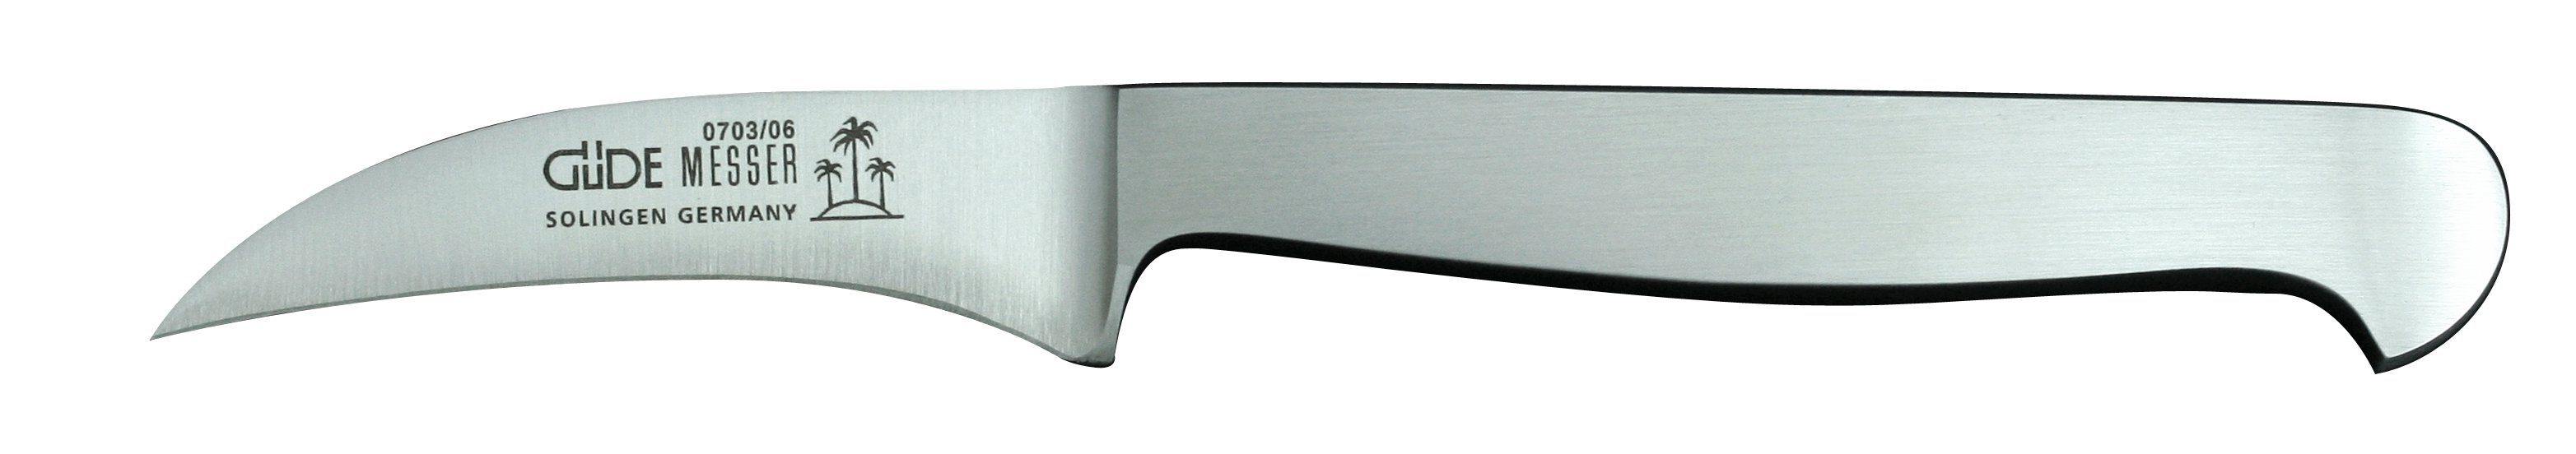 Solingen - Klinge Schälmesser 6 Güde Kappa, Griff Schälmesser Messer und CVM-Stahl cm